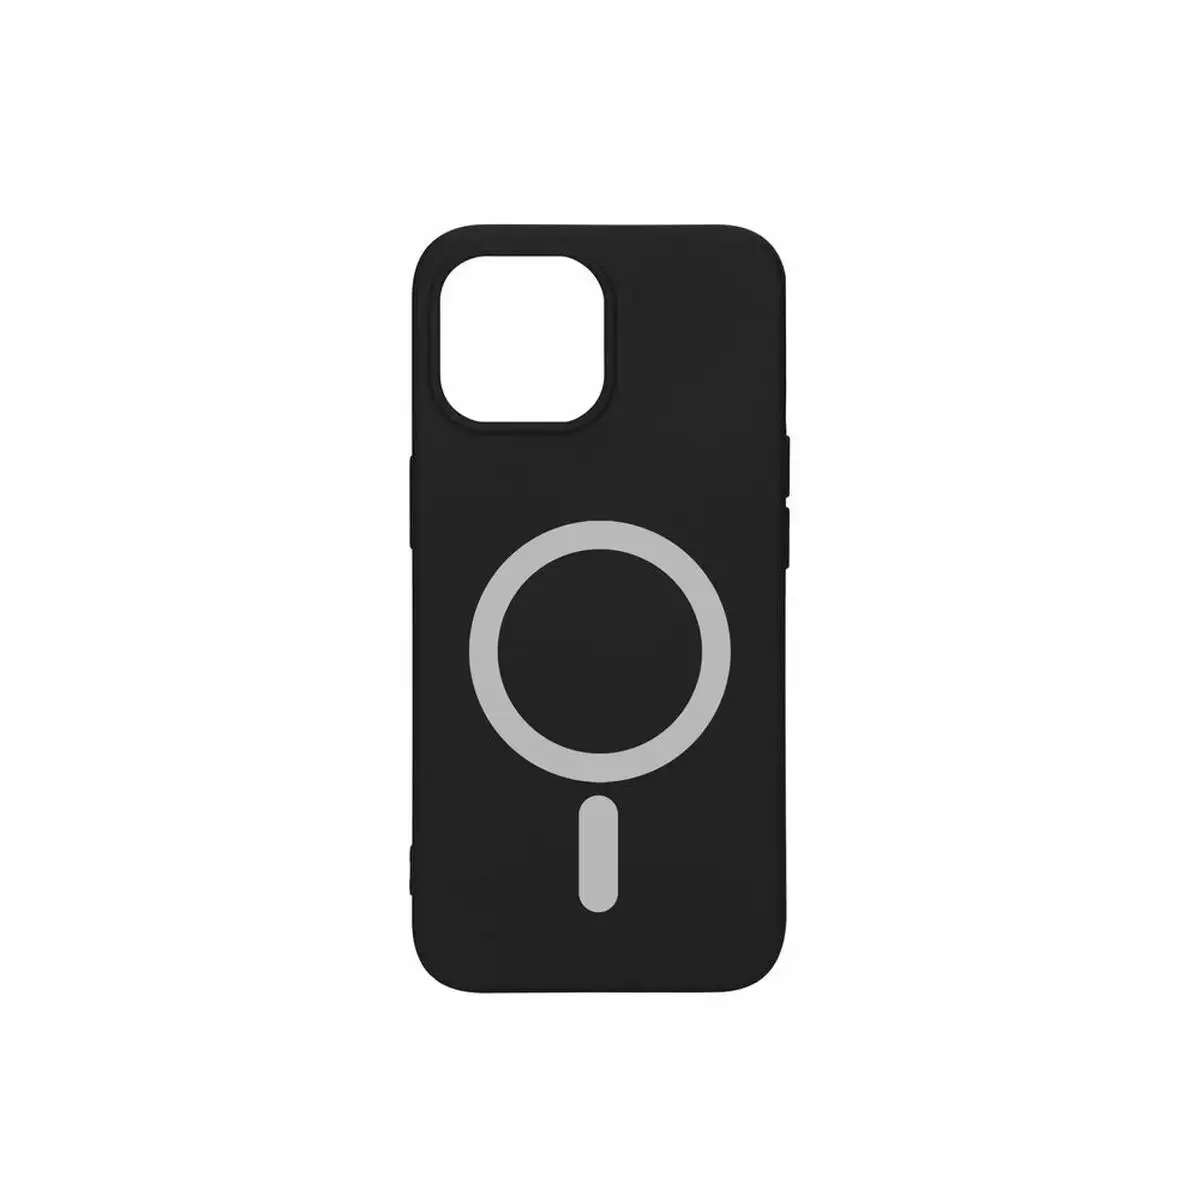 Protection pour telephone portable ksix iphone 13 pro noir_5234. DIAYTAR SENEGAL - Là où Chaque Achat a du Sens. Explorez notre gamme et choisissez des produits qui racontent une histoire, du traditionnel au contemporain.